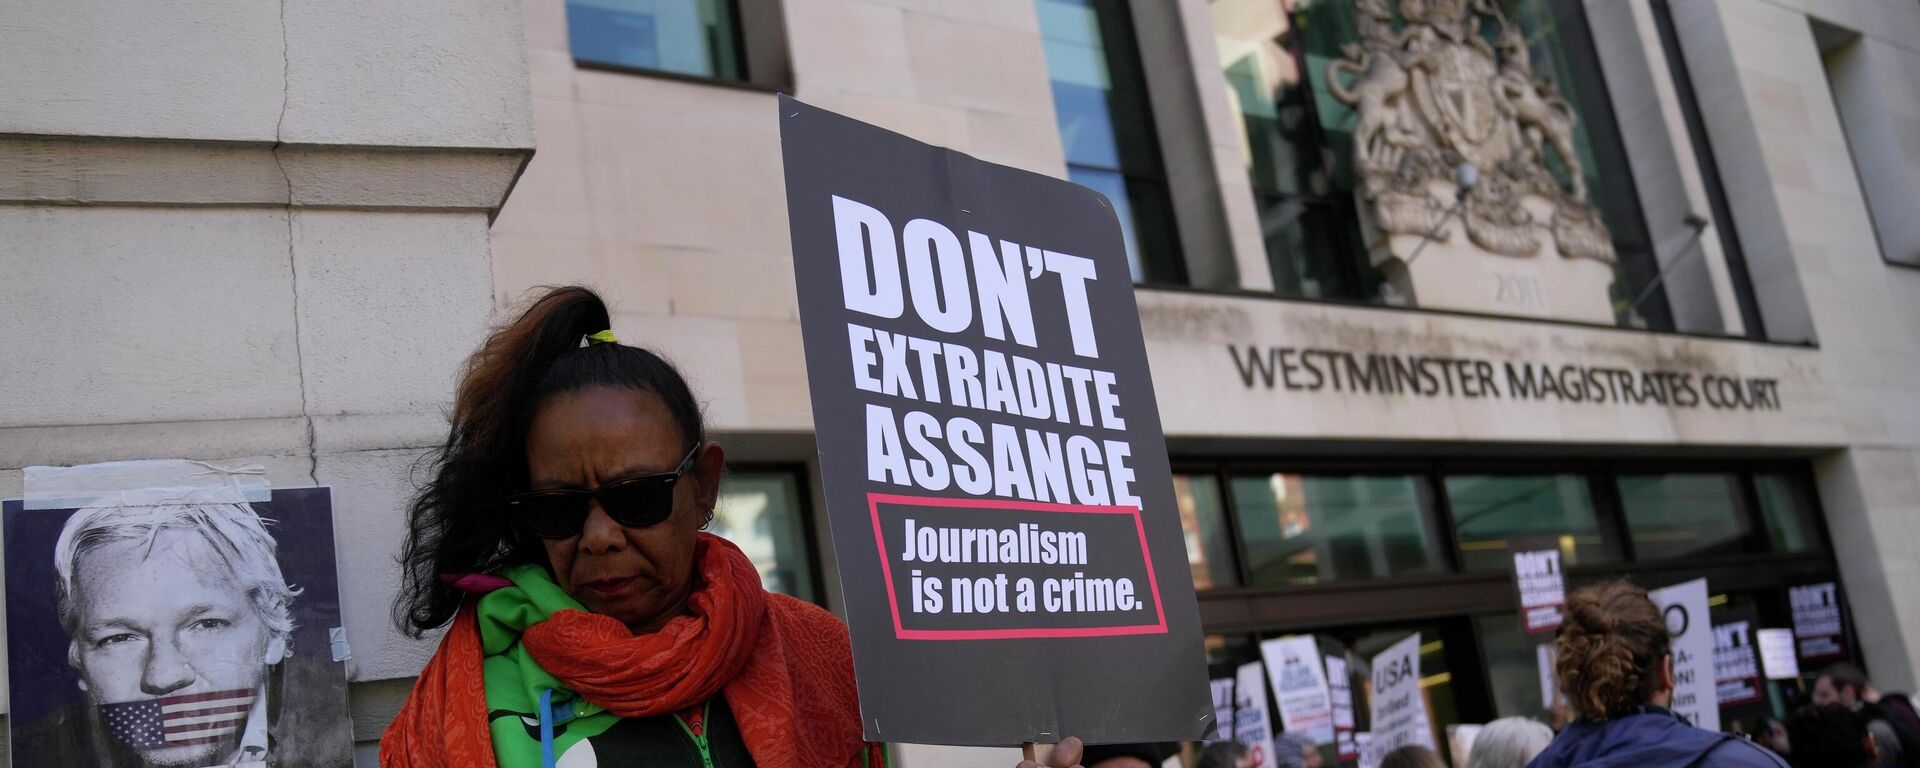 İnsan hakları ve basın özgürlüğü savunucuları, İngiltere İçişleri Bakanı Priti Patel'den WikiLeaks'in kurucusu Julian Assange'ın ABD'ye iadesini durdurmasını istedi. - Sputnik Türkiye, 1920, 17.05.2022